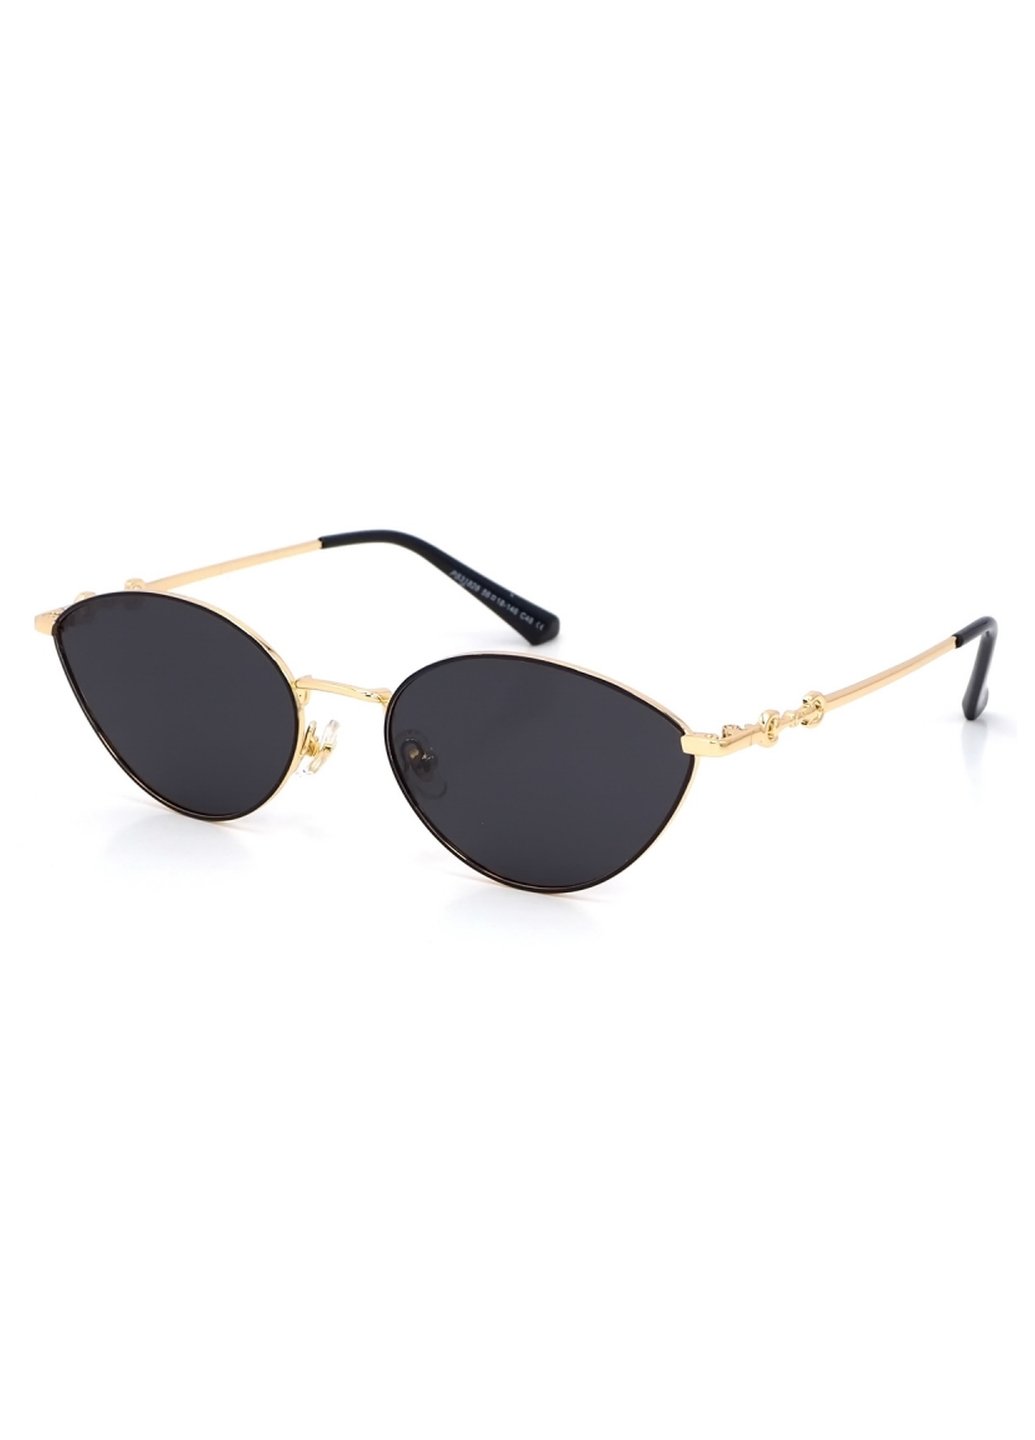 Купить Женские солнцезащитные очки Merlini с поляризацией S31828P 117080 - Золотистый в интернет-магазине